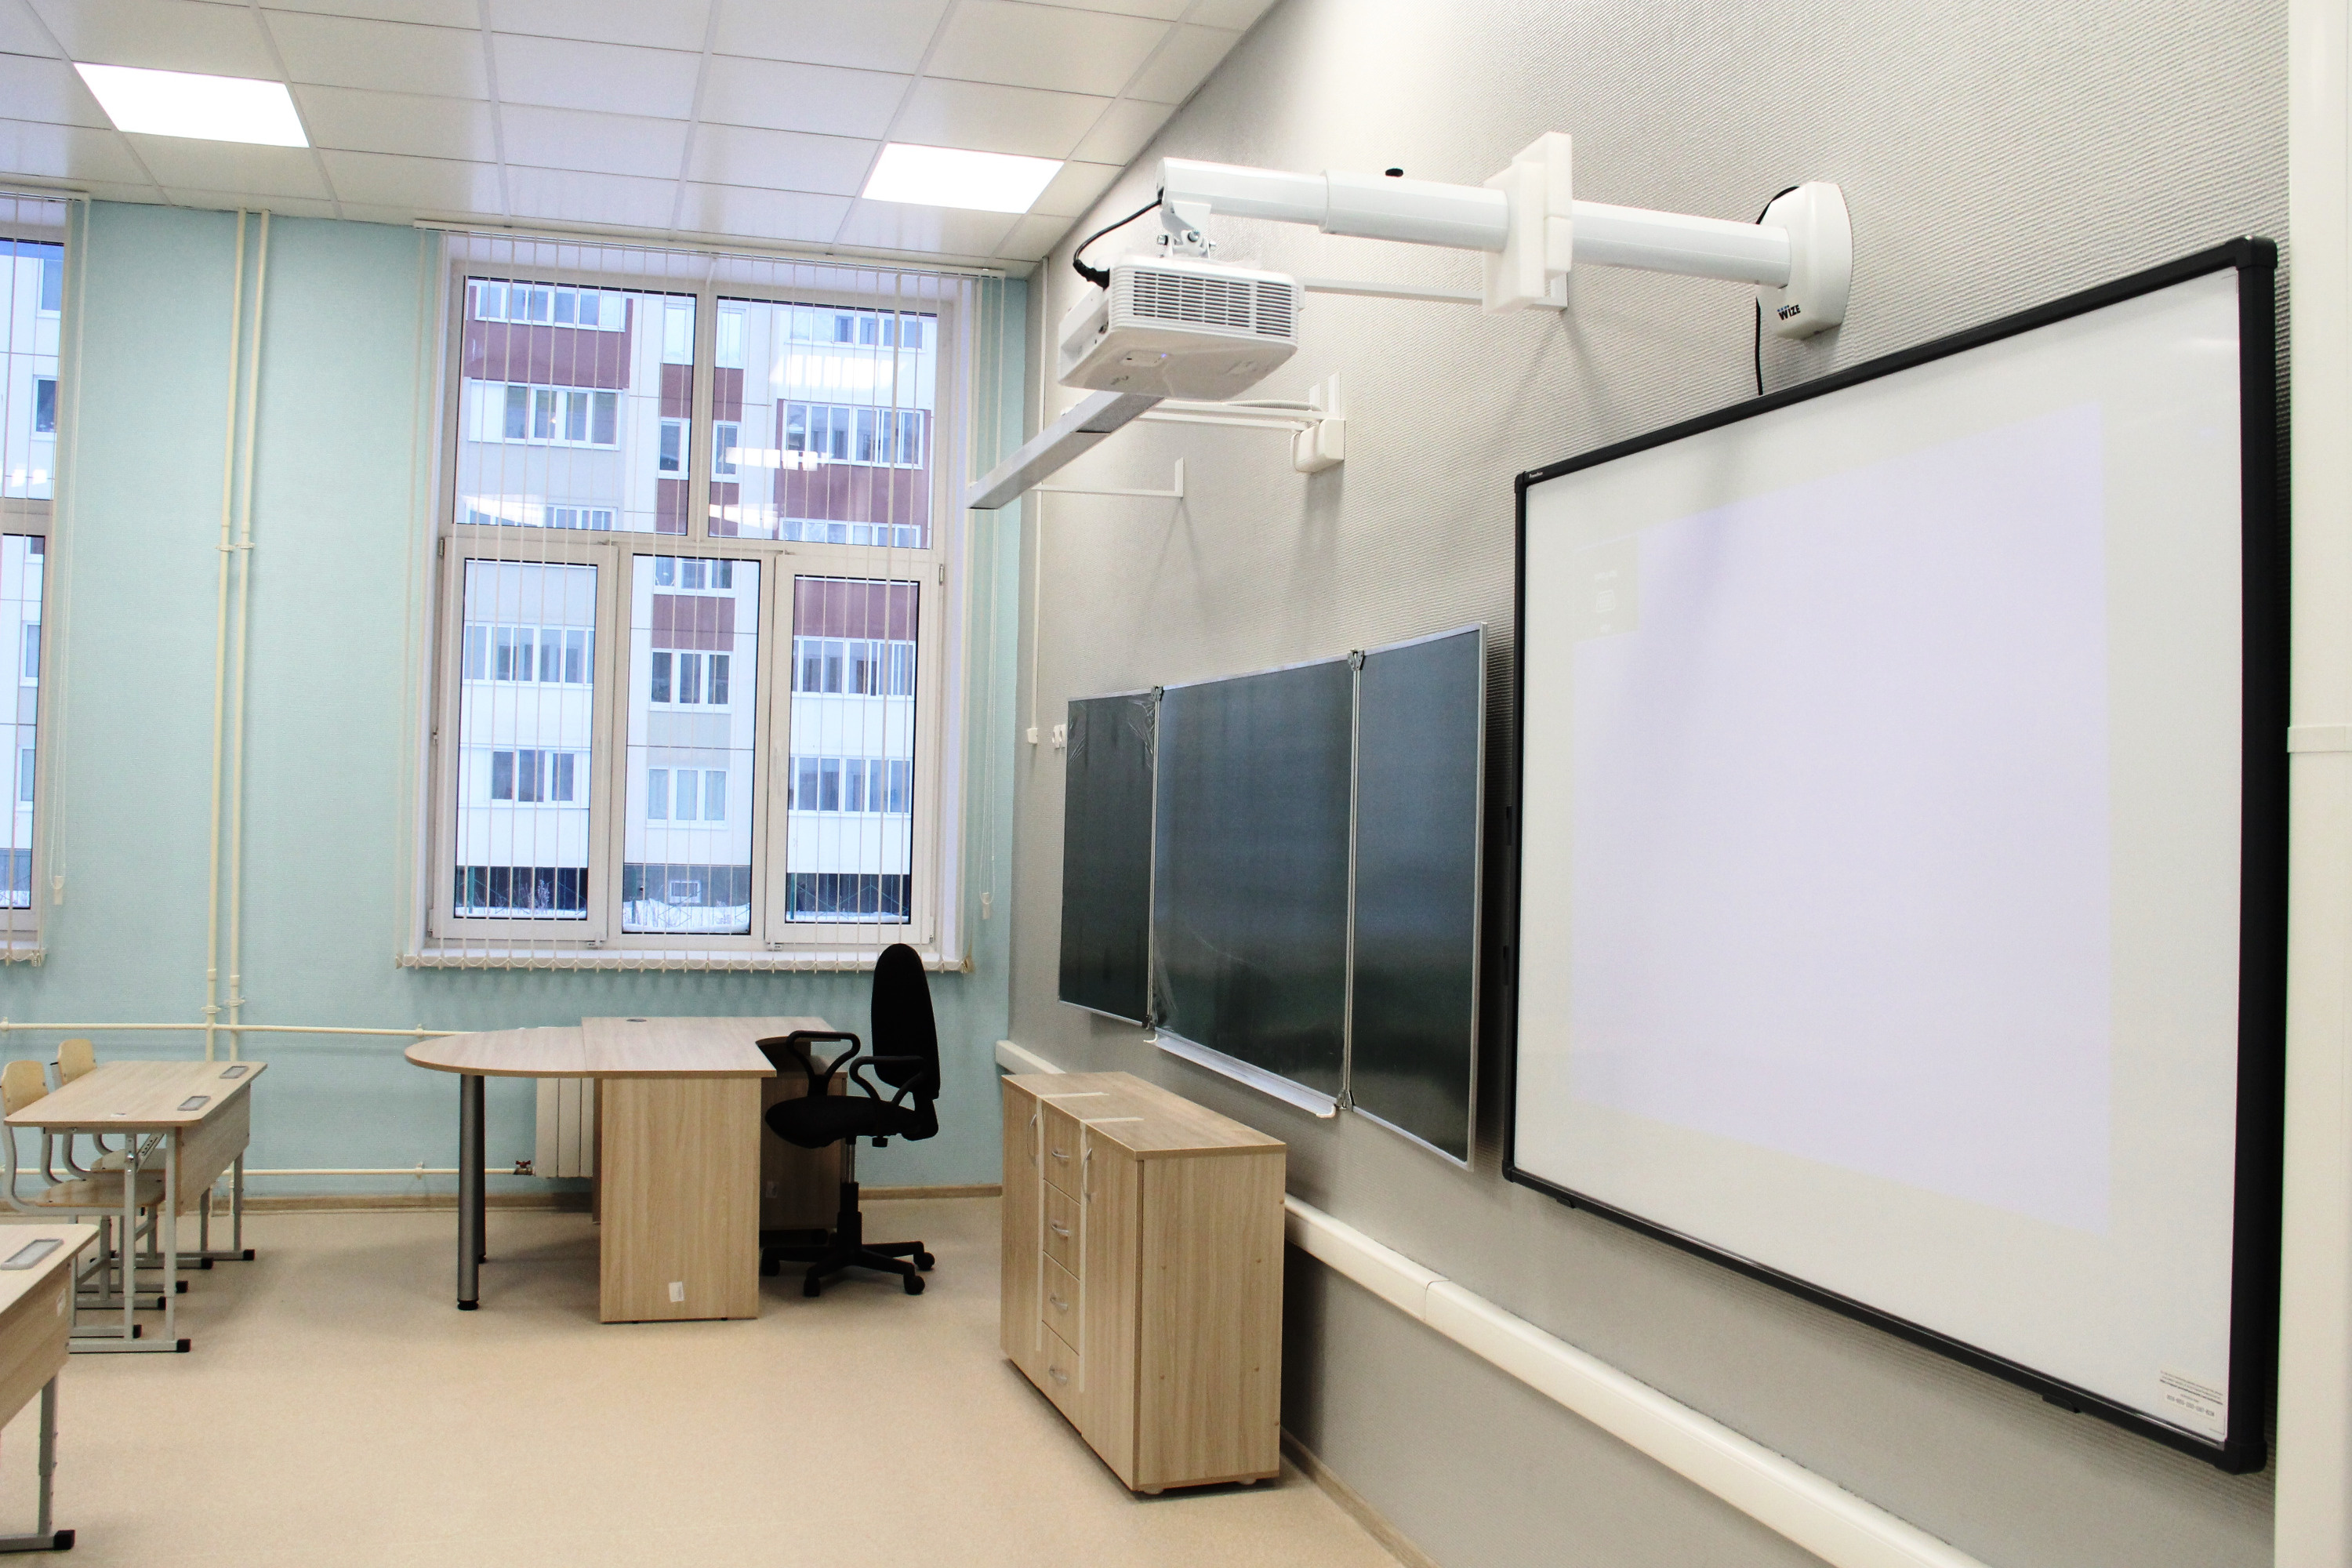 Типичный школьный кабинет — доска, видеоэкран и проектор